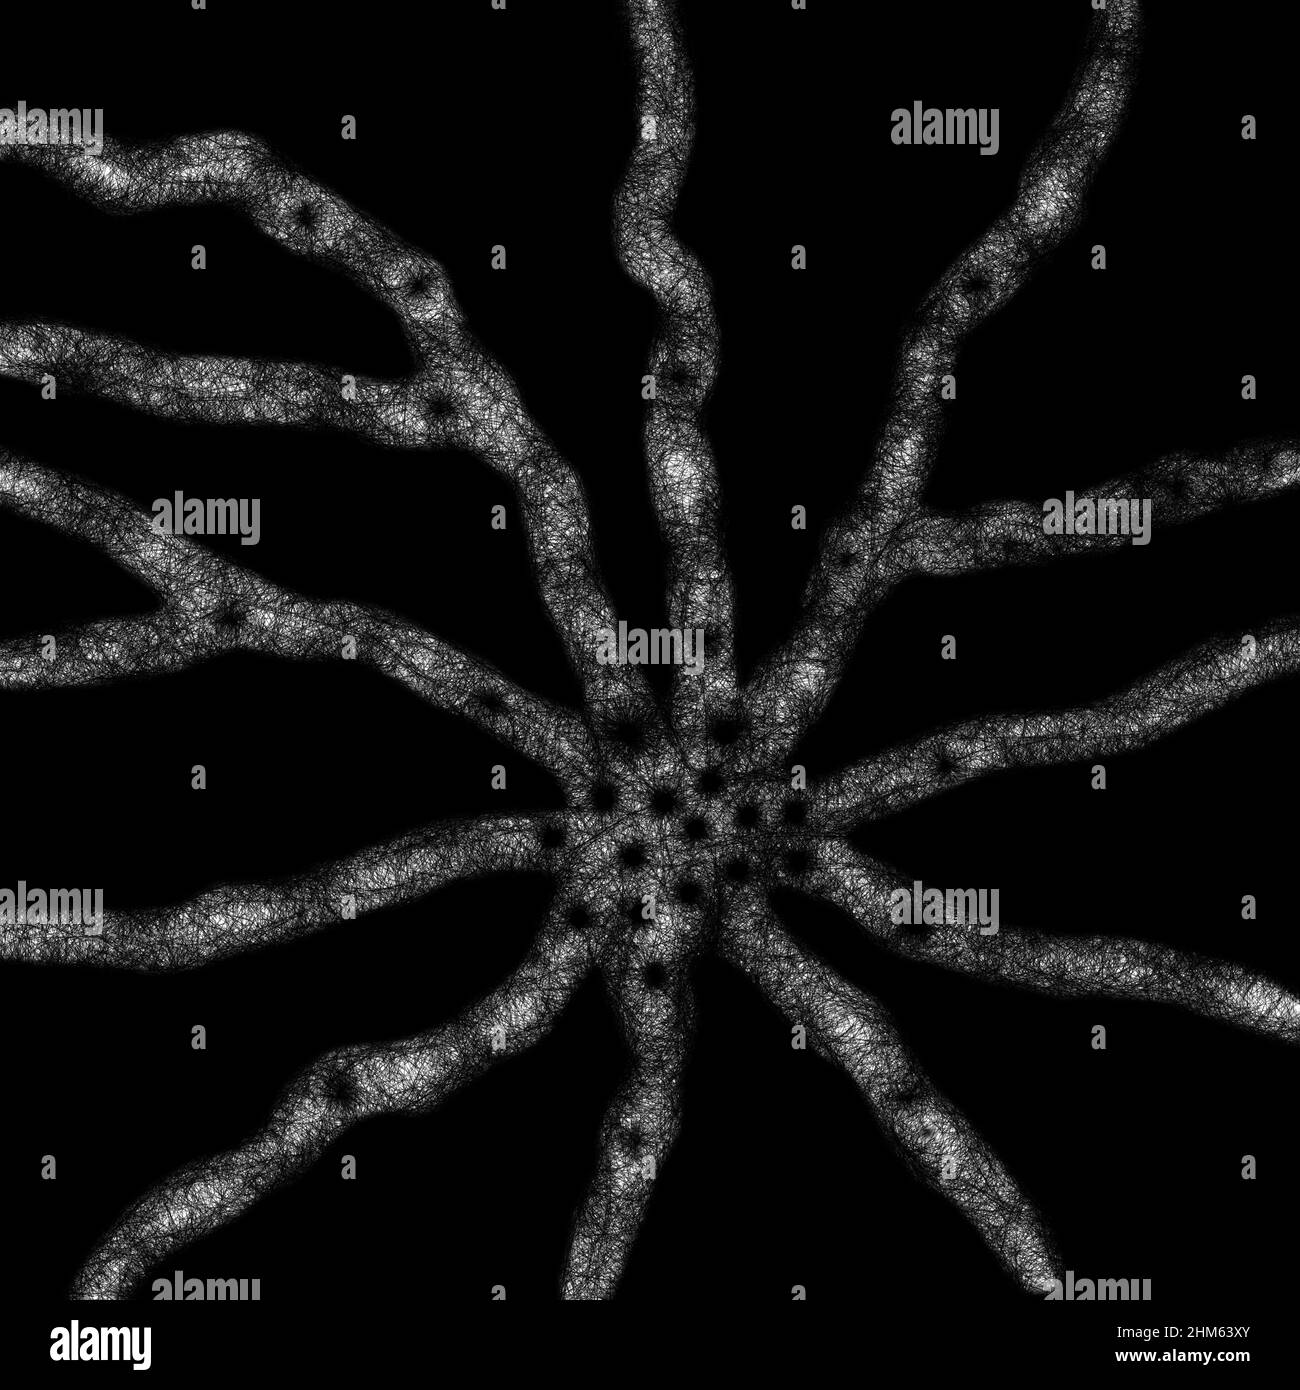 Neurone, radice vegetale, antichi orrori cosmici trascendentali, immagine astratta. Foto Stock